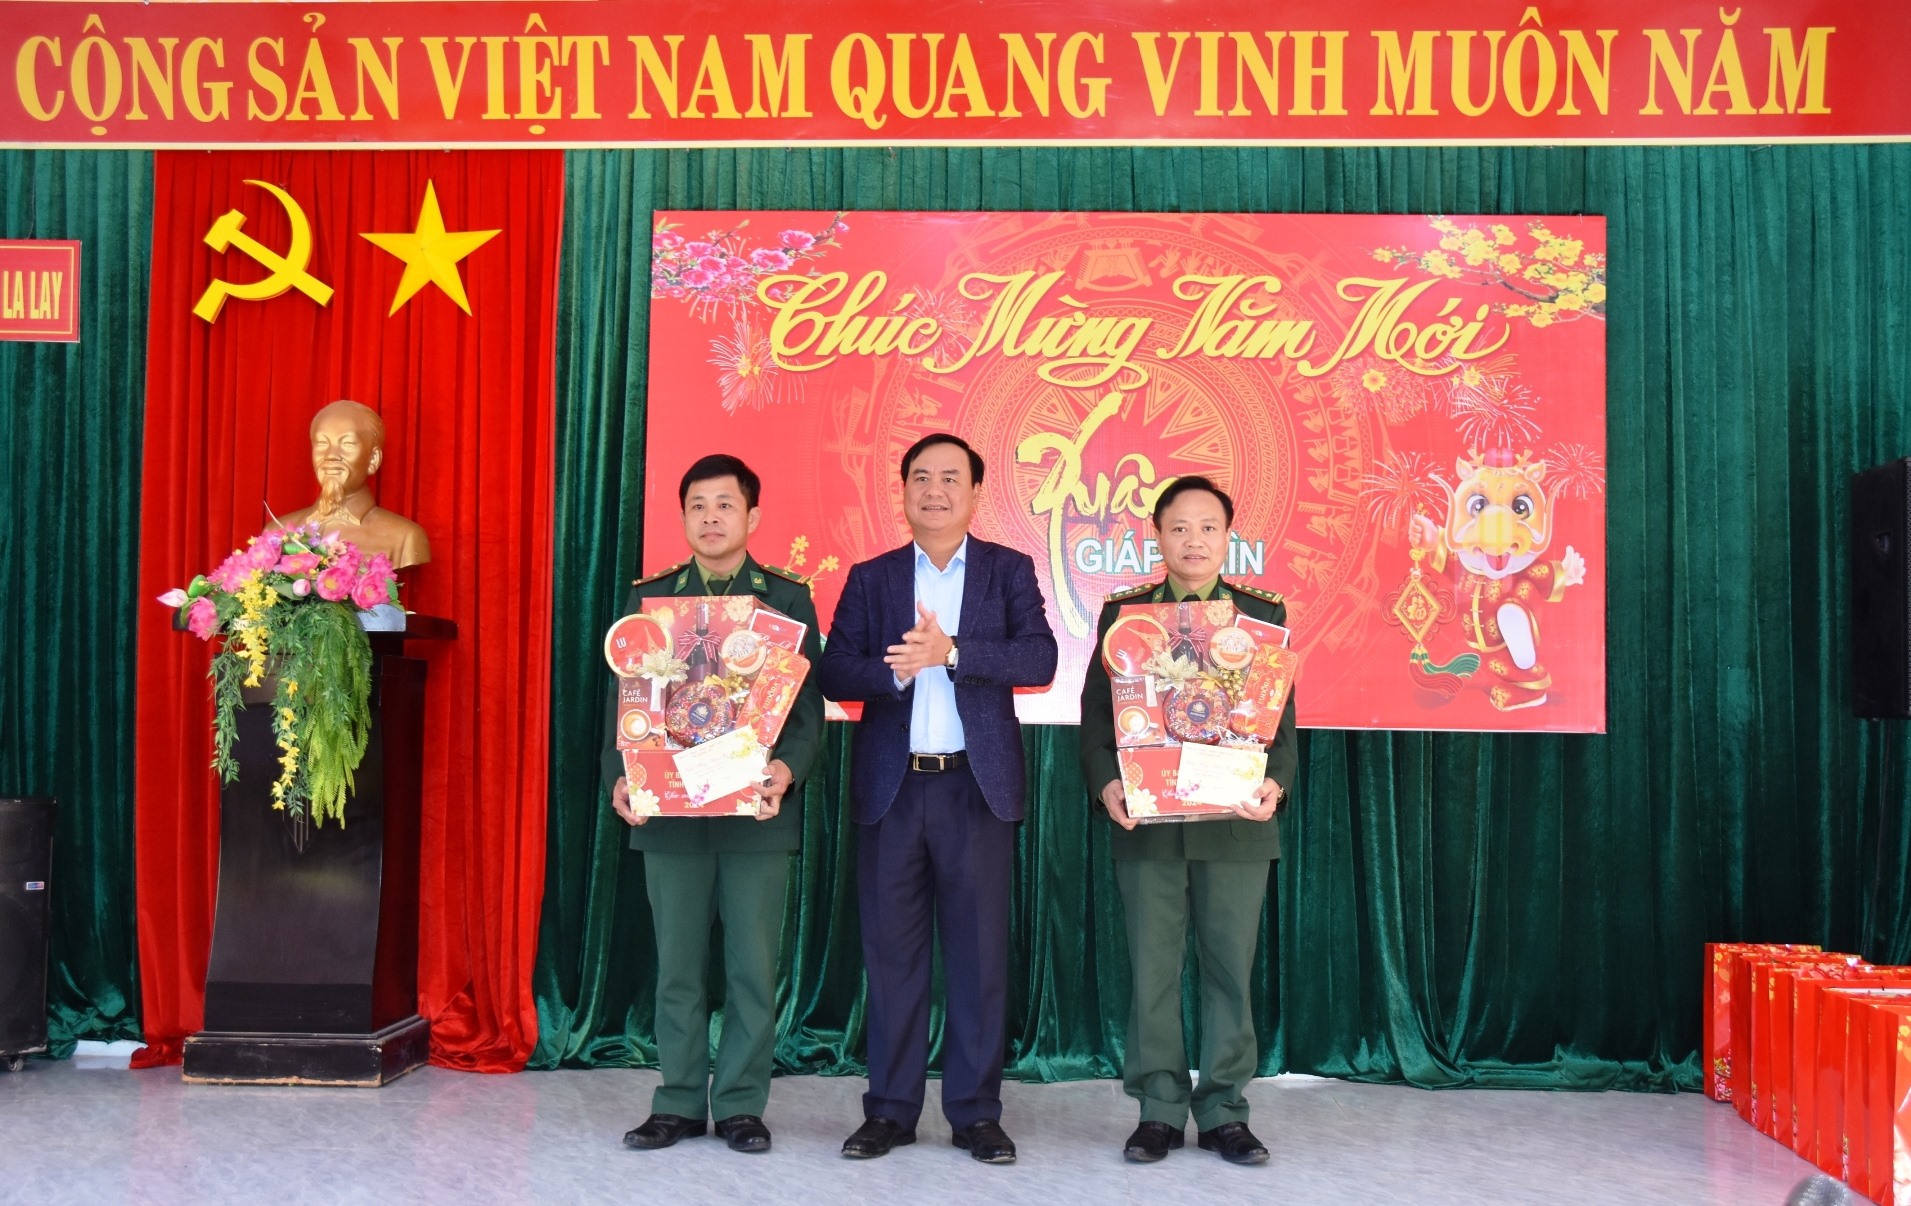 Chủ tịch UBND tỉnh Võ Văn Hưng trao tặng quà cho cán bộ, chiến sĩ Đồn Biên phòng CKQT La Lay và Đồn Biên phòng A Vao - Ảnh: ĐV